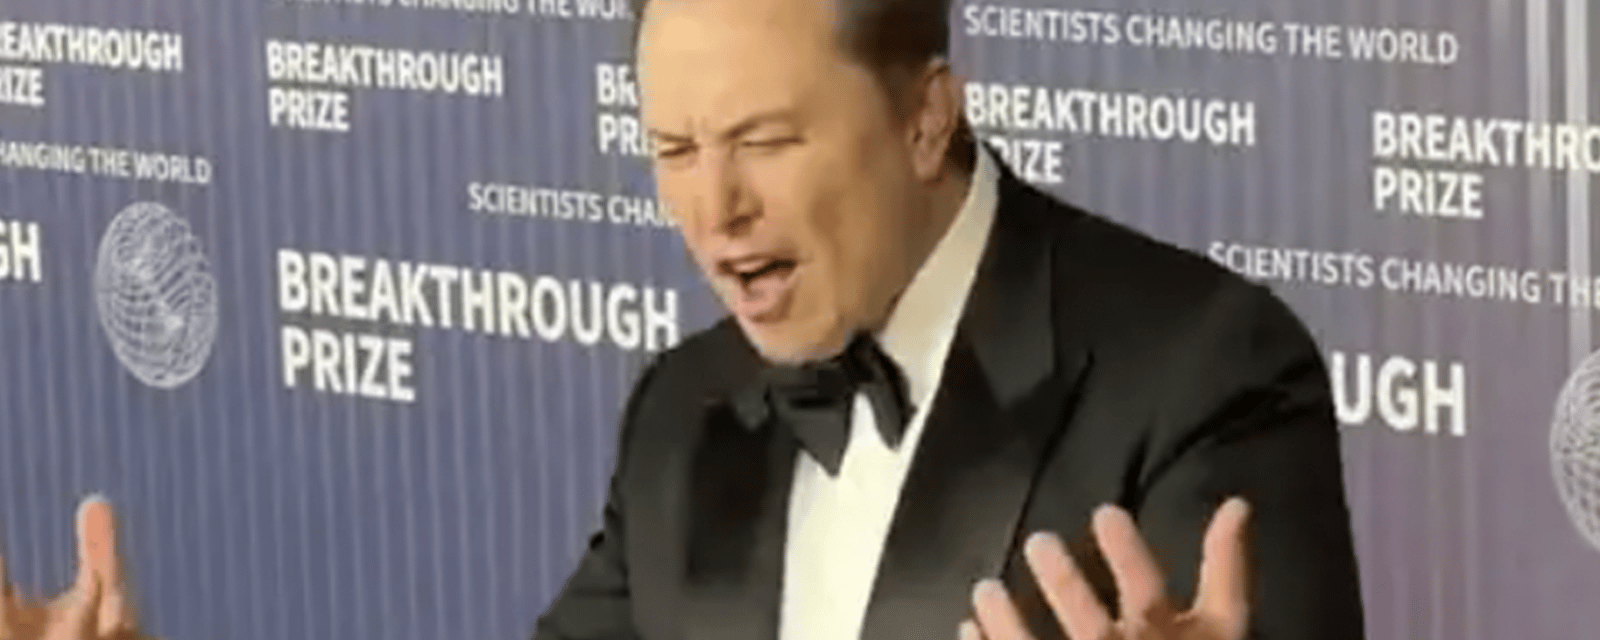 Elon Musk donne tout devant des photographes lors de son passage sur le tapis rouge d'une cérémonie de prix